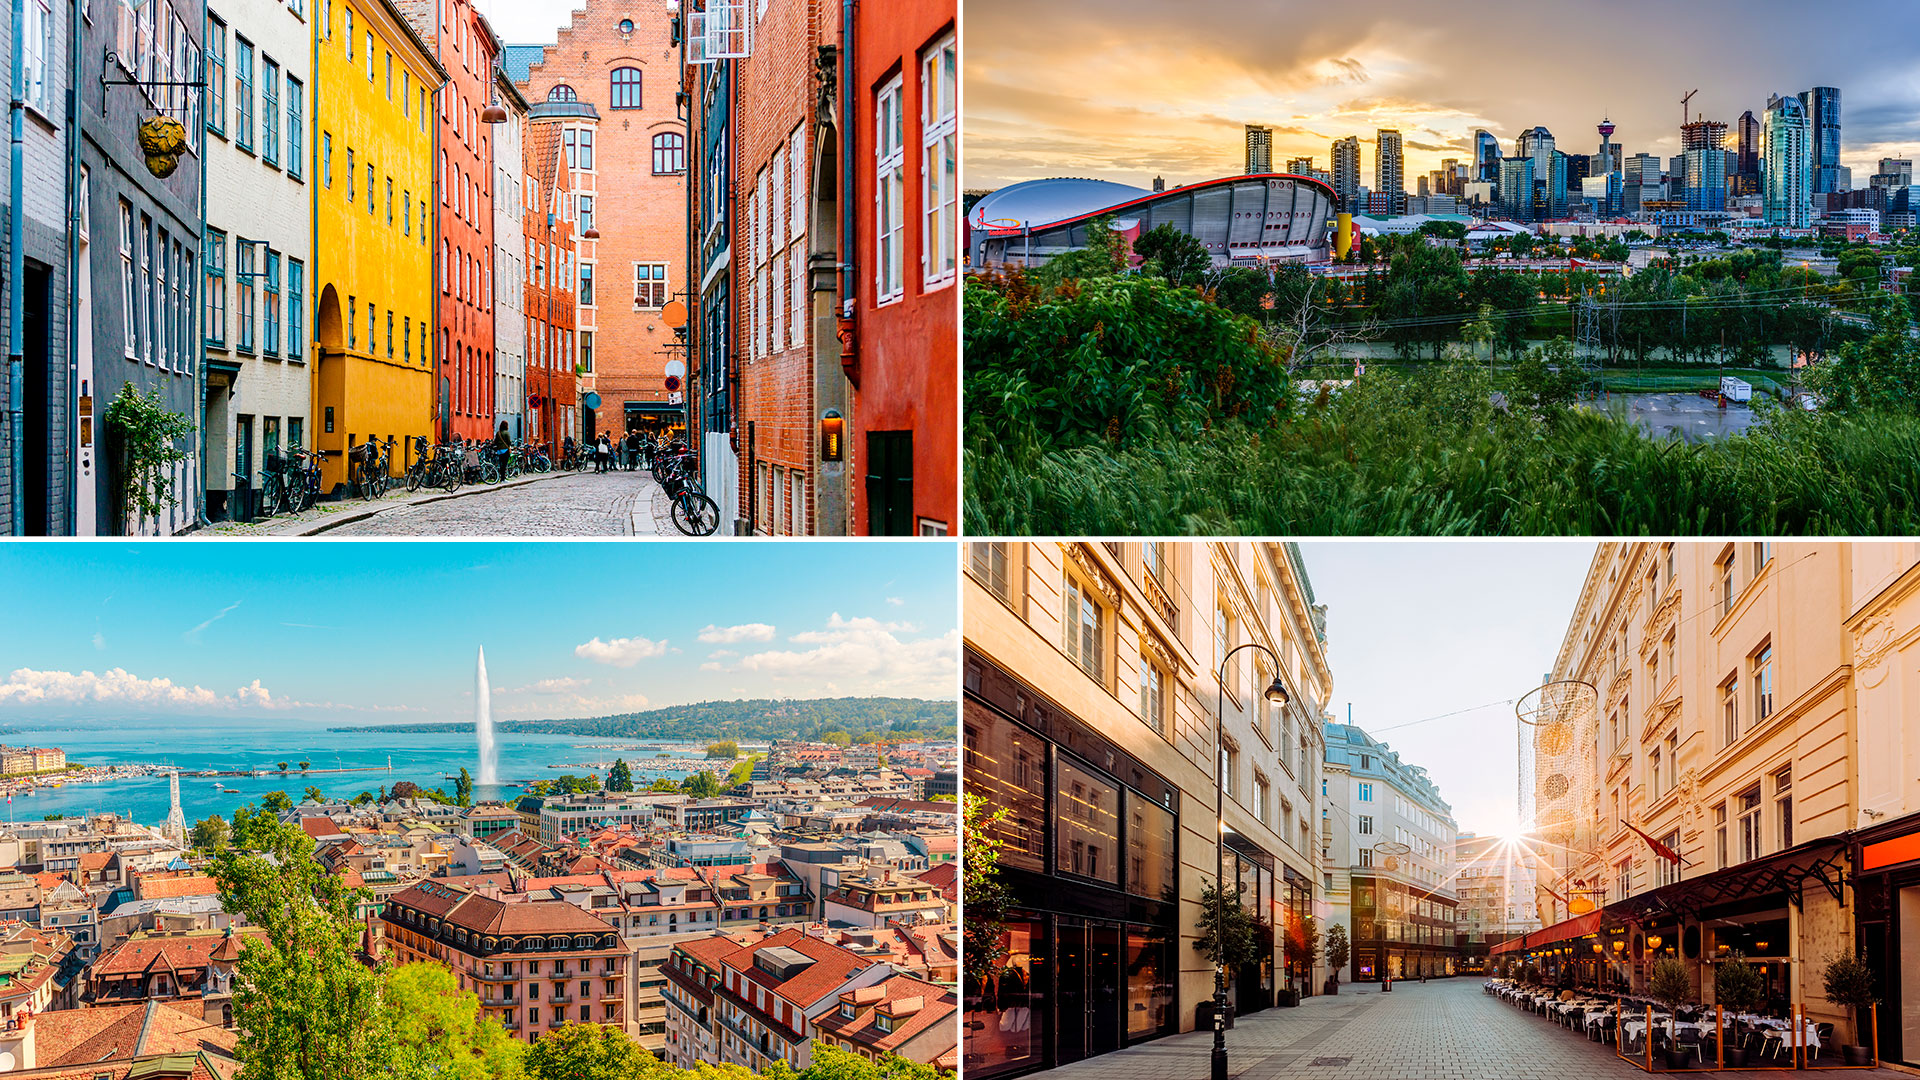 Viena volvió a ocupar el puesto número uno como la mejor ciudad del mundo para vivir, según el informe de la revista británica The Economist. Vistas de Copenhague, Ginegra, Viena y Calgary